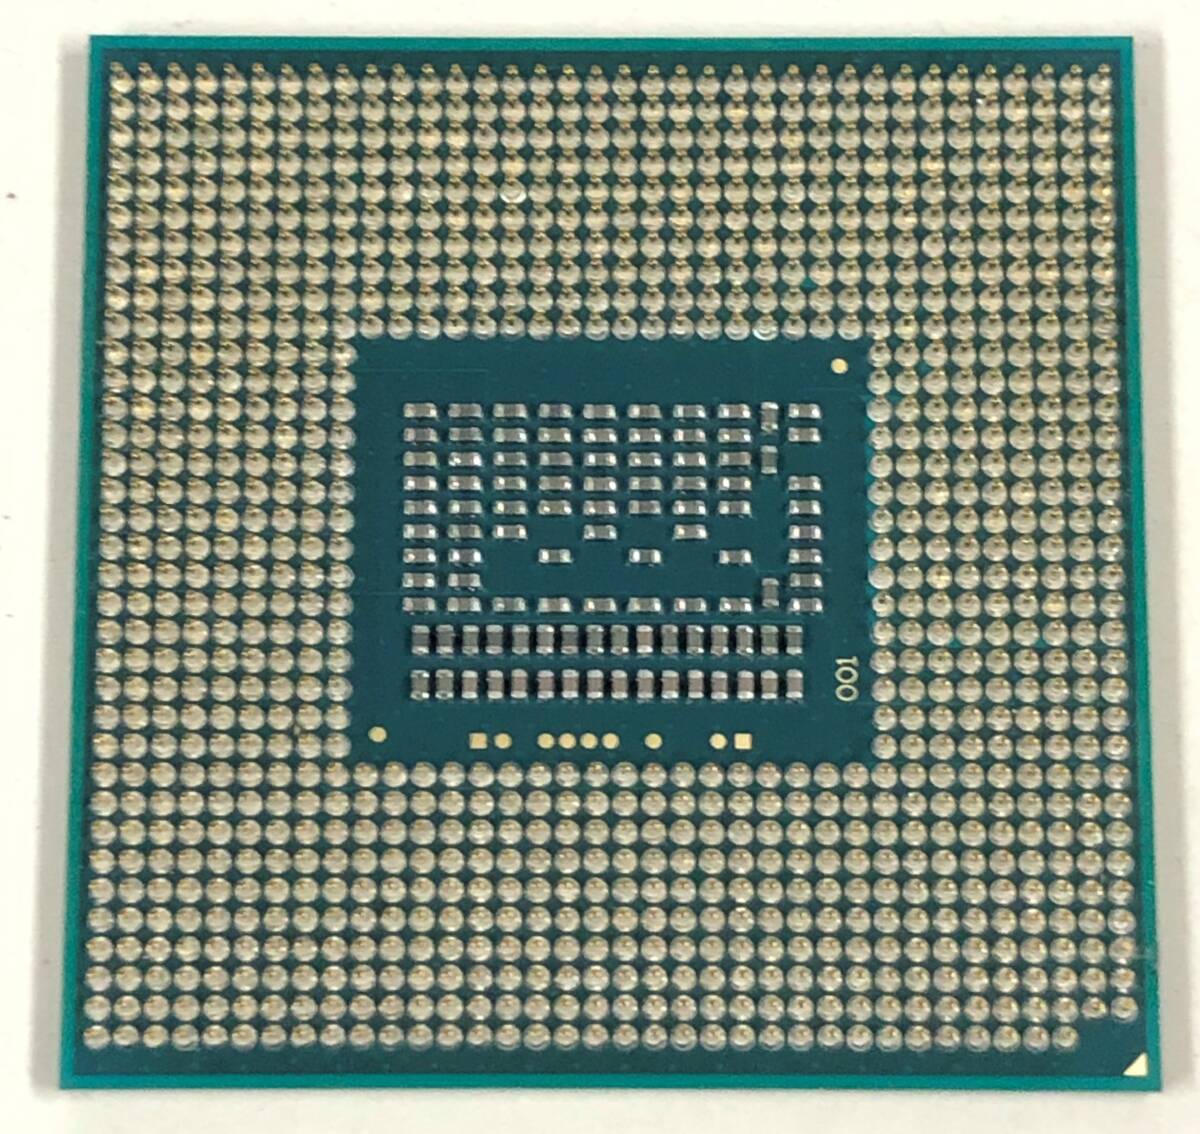 【中古パーツ】複数購入可 CPU Intel Core i7 3632QM 2.2GHz TB 3.2GHz SR0V0 Socket G2 (rPGA988B) 4コア8スレッド動作品 ノートパソコン_画像1